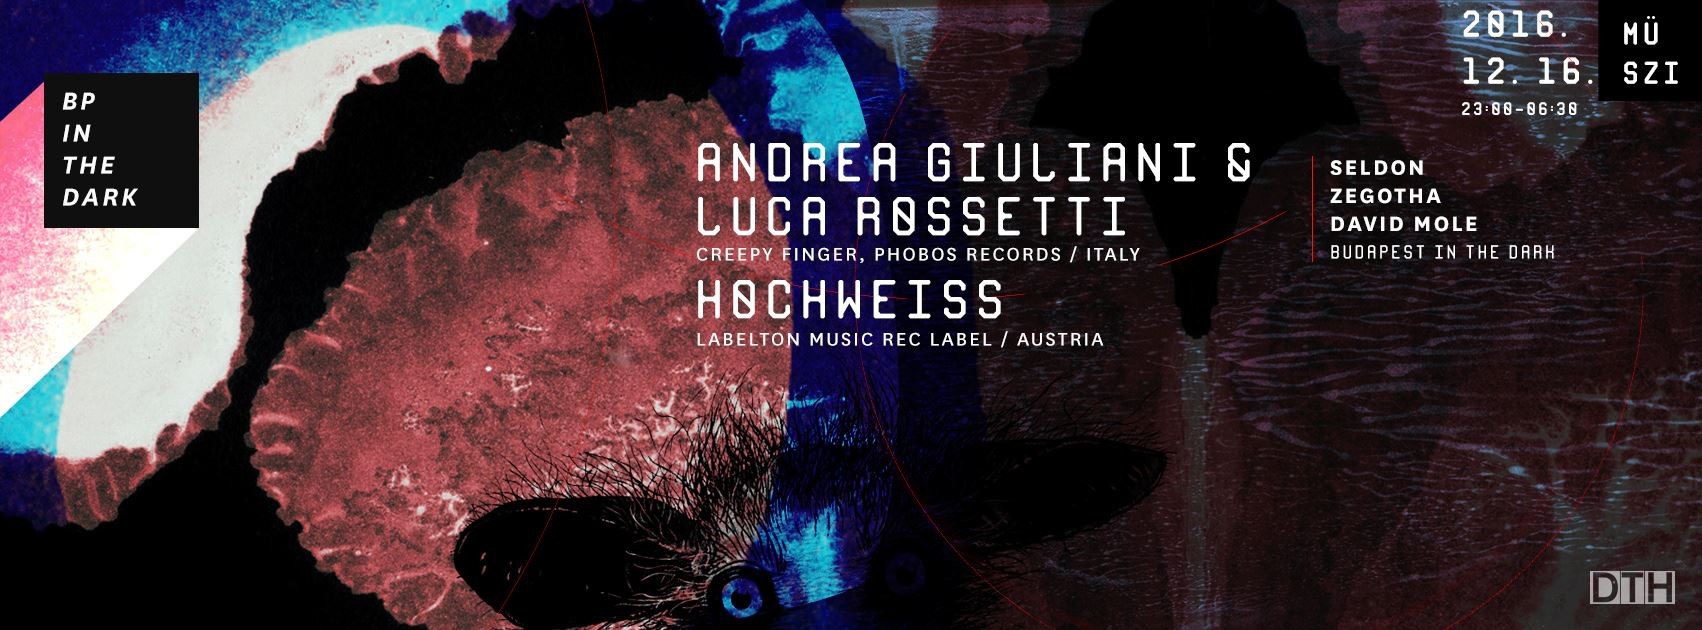 Andrea Giuliani & Luca Rossetti @ Budapest in the dark, MüSzi 2016.12.16.